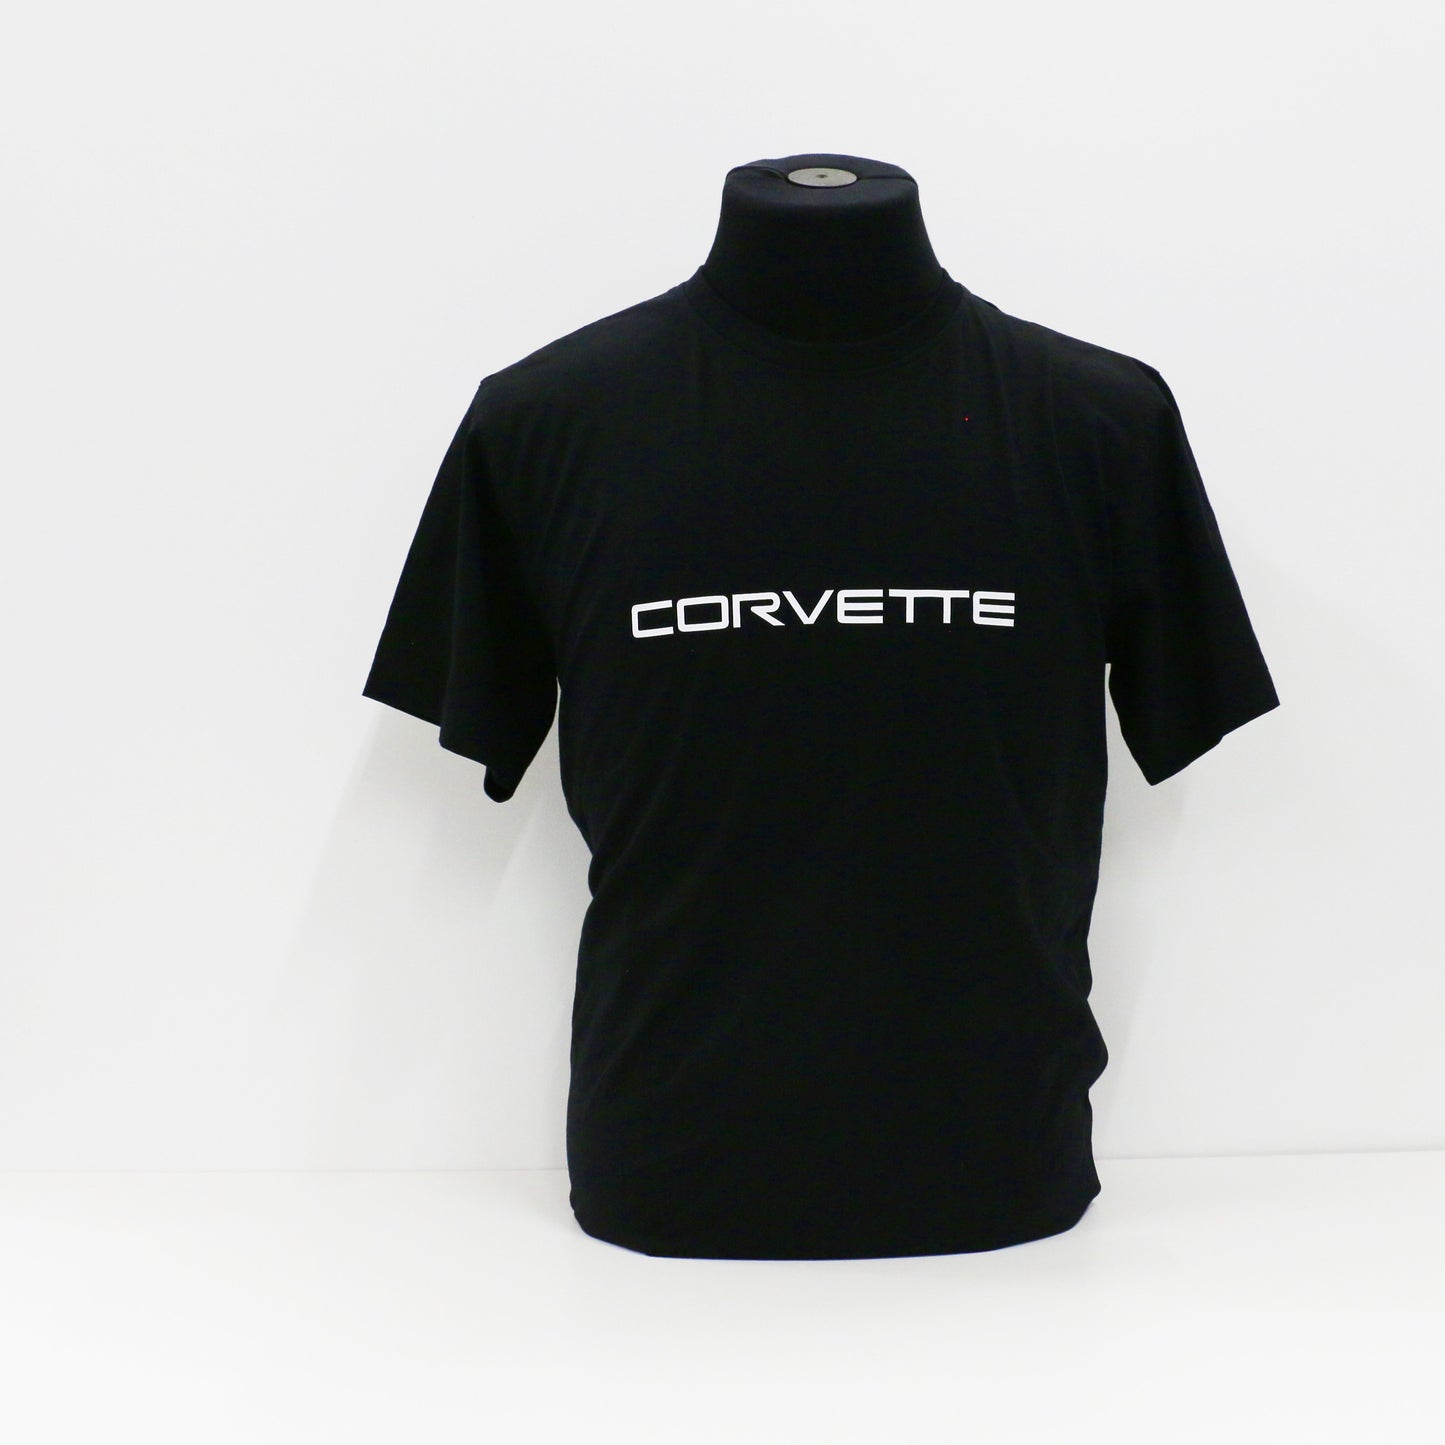 Corvette Premium T-Shirt aus Baumwolle in schwarz mit Front Druck weiss.